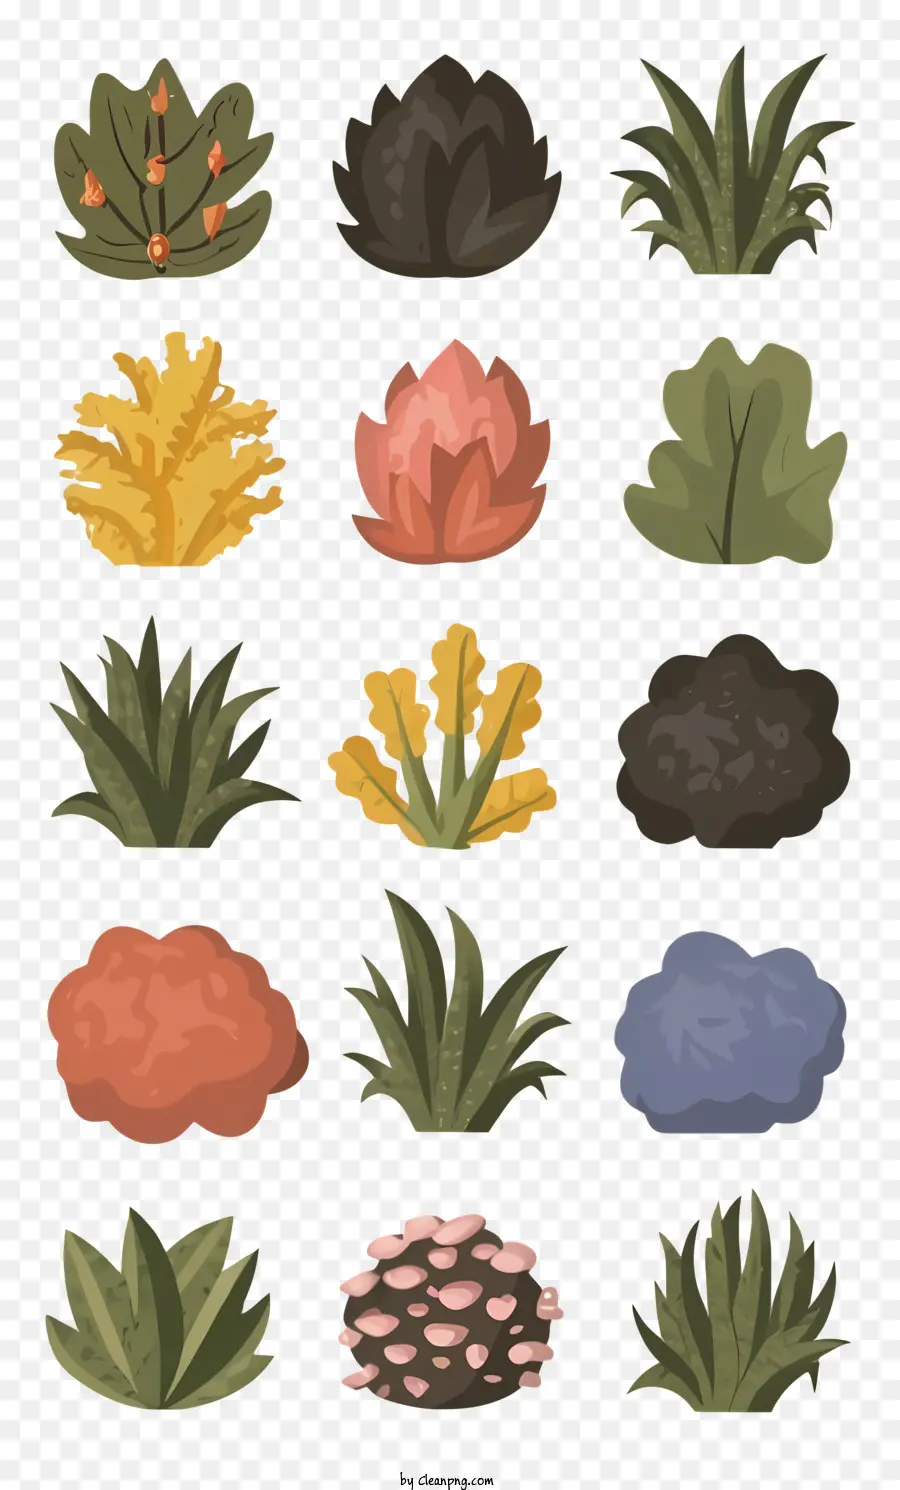 Pflanzen Succulenten Sträucher Reben Kaskadiermuster - Sammlung von Pflanzen im Kaskadenmuster, verschiedene Farben